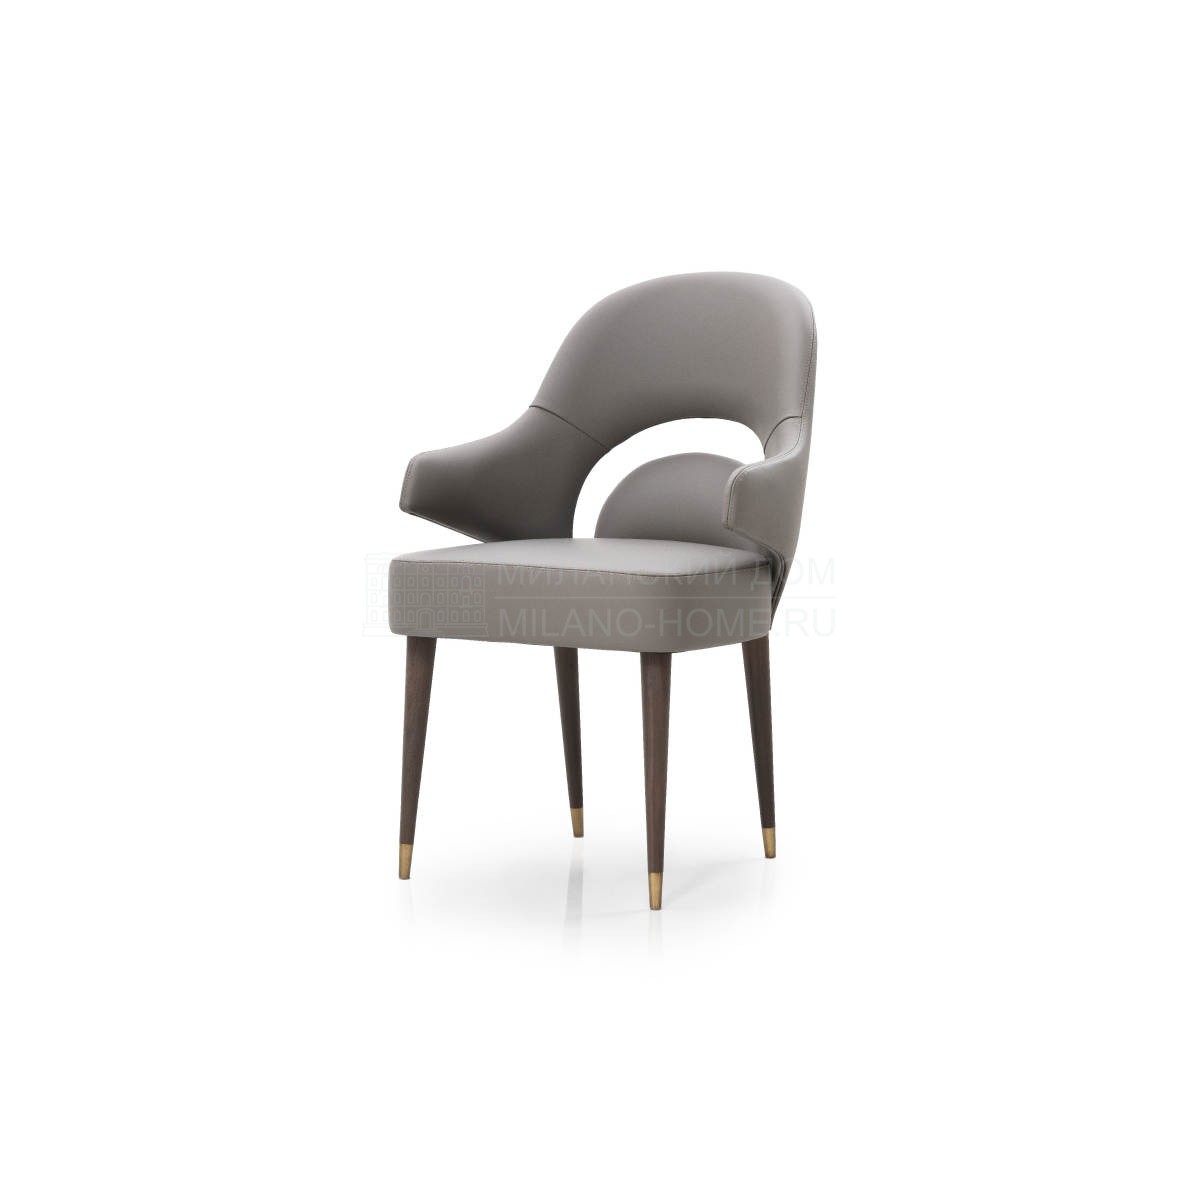 Полукресло Vine leather chair из Италии фабрики TURRI